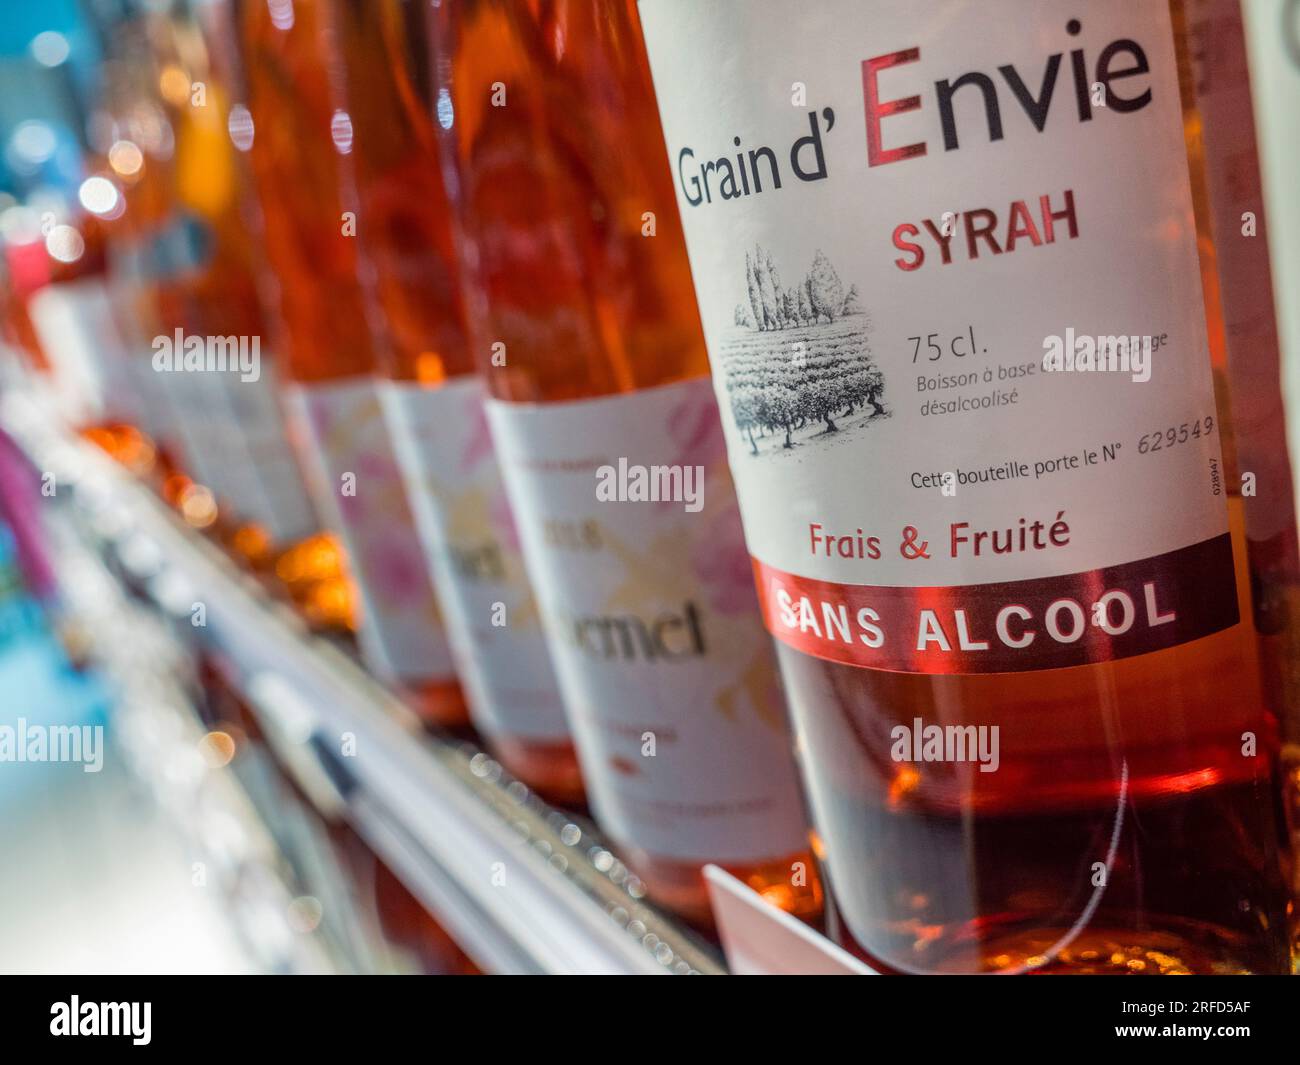 Vin sans alcool Syrah grain d'envie 75cl vin 'SANS ALCOOL' bouteille et étiquette sur étagère dans le magasin de vin français Banque D'Images